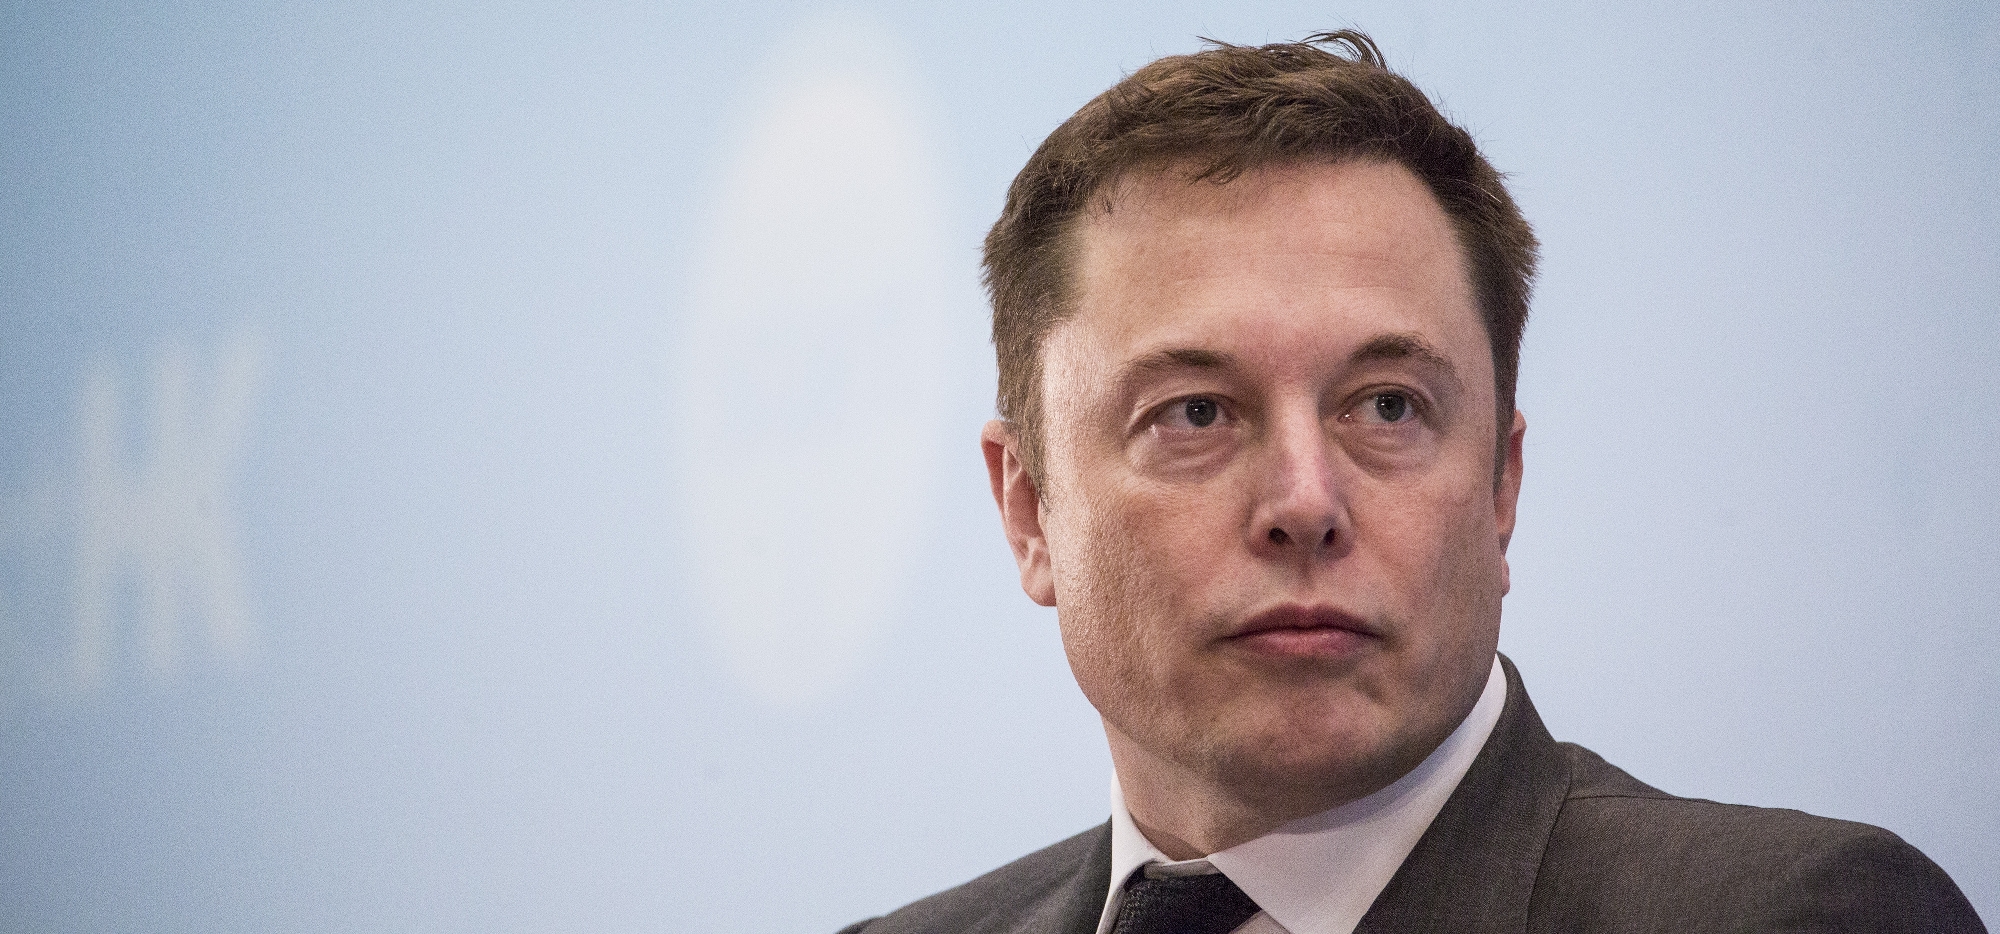 Живее всех живых: как Илон Маск сделает Tesla прибыльной в этом году?